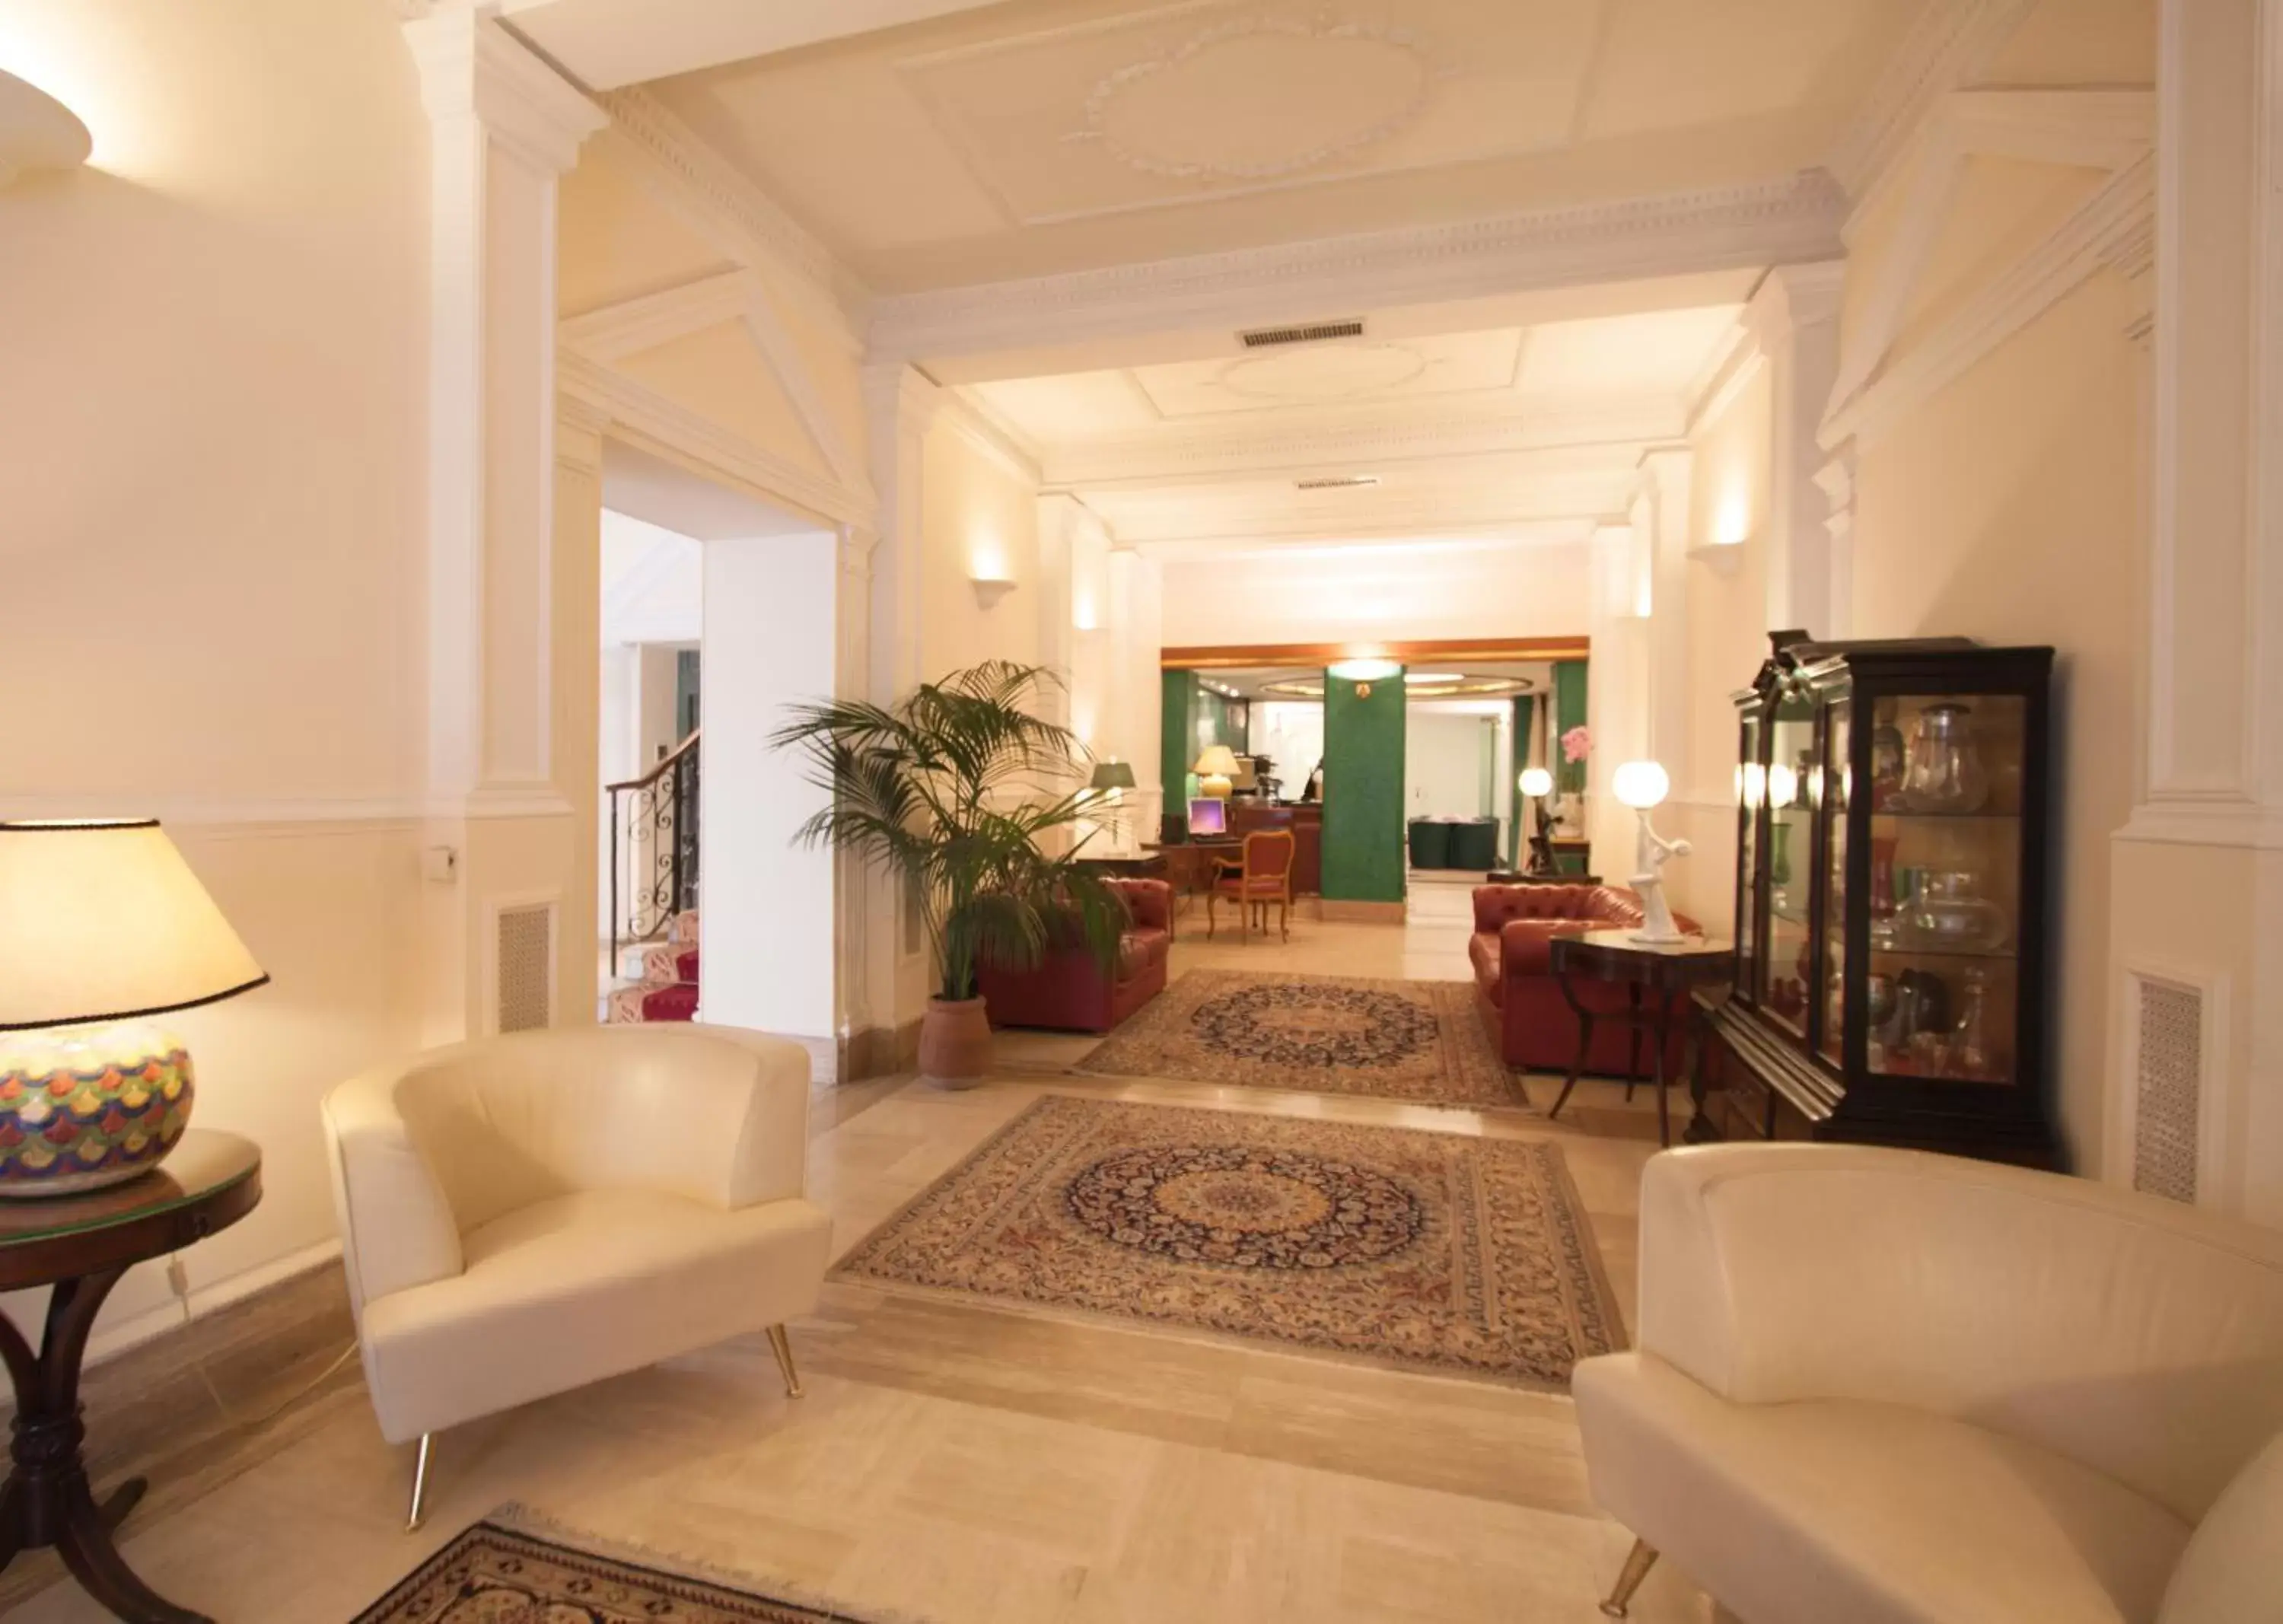 Lobby or reception, Lobby/Reception in Hotel Laurentia